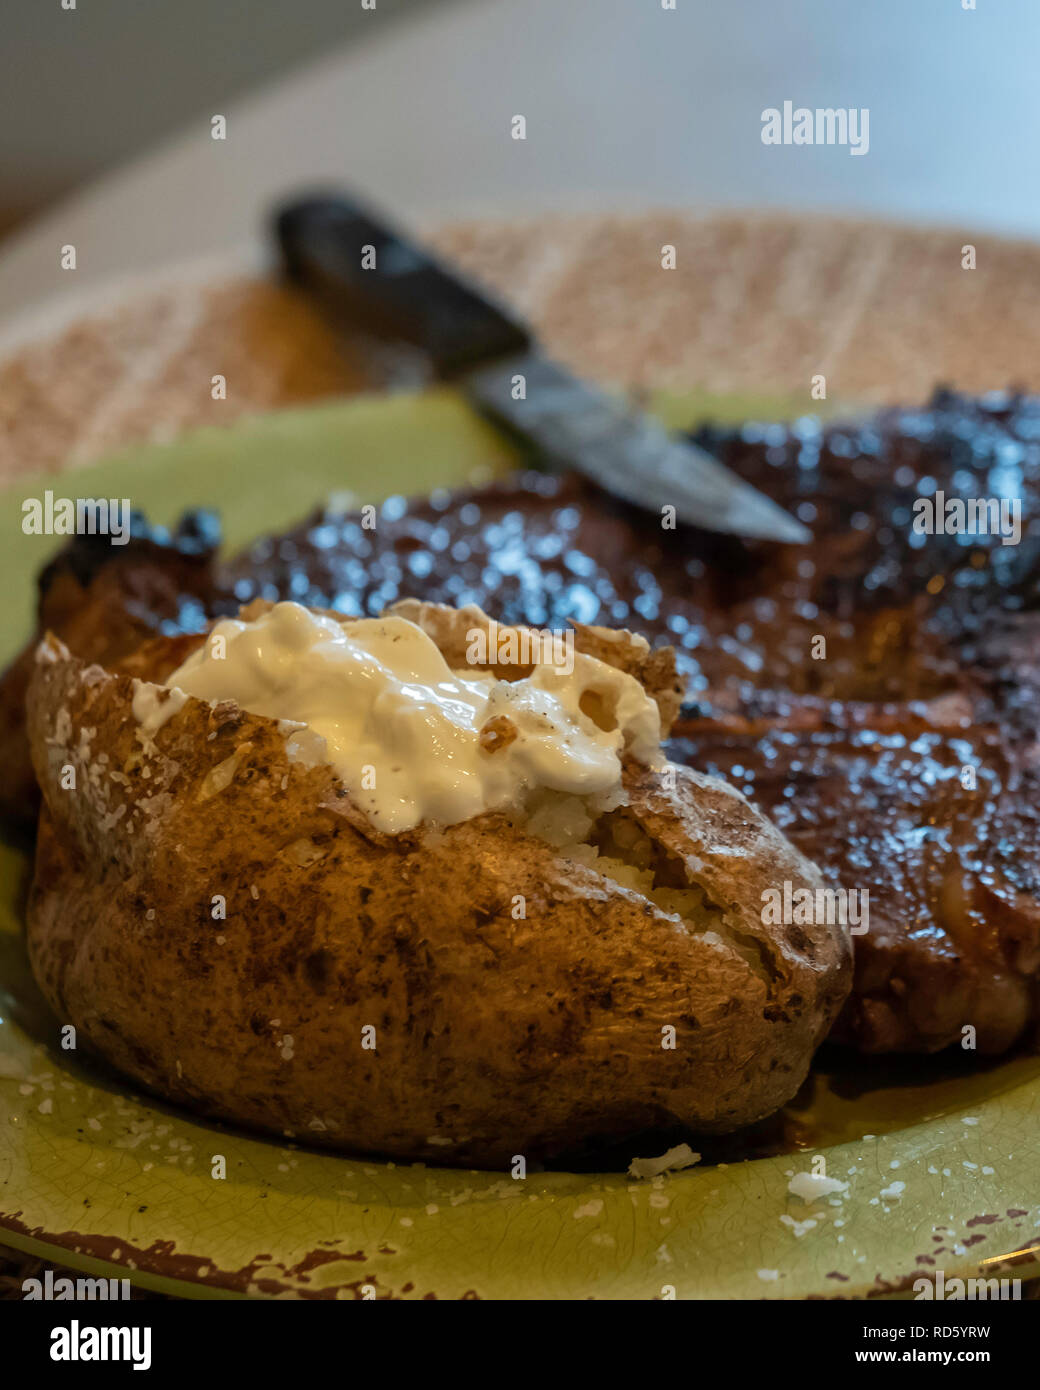 Una bistecca rosolata, o costata di manzo cotta a medie ben fatto con una patata al forno e panna acida su una piastra per cena. Stati Uniti d'America. Foto Stock